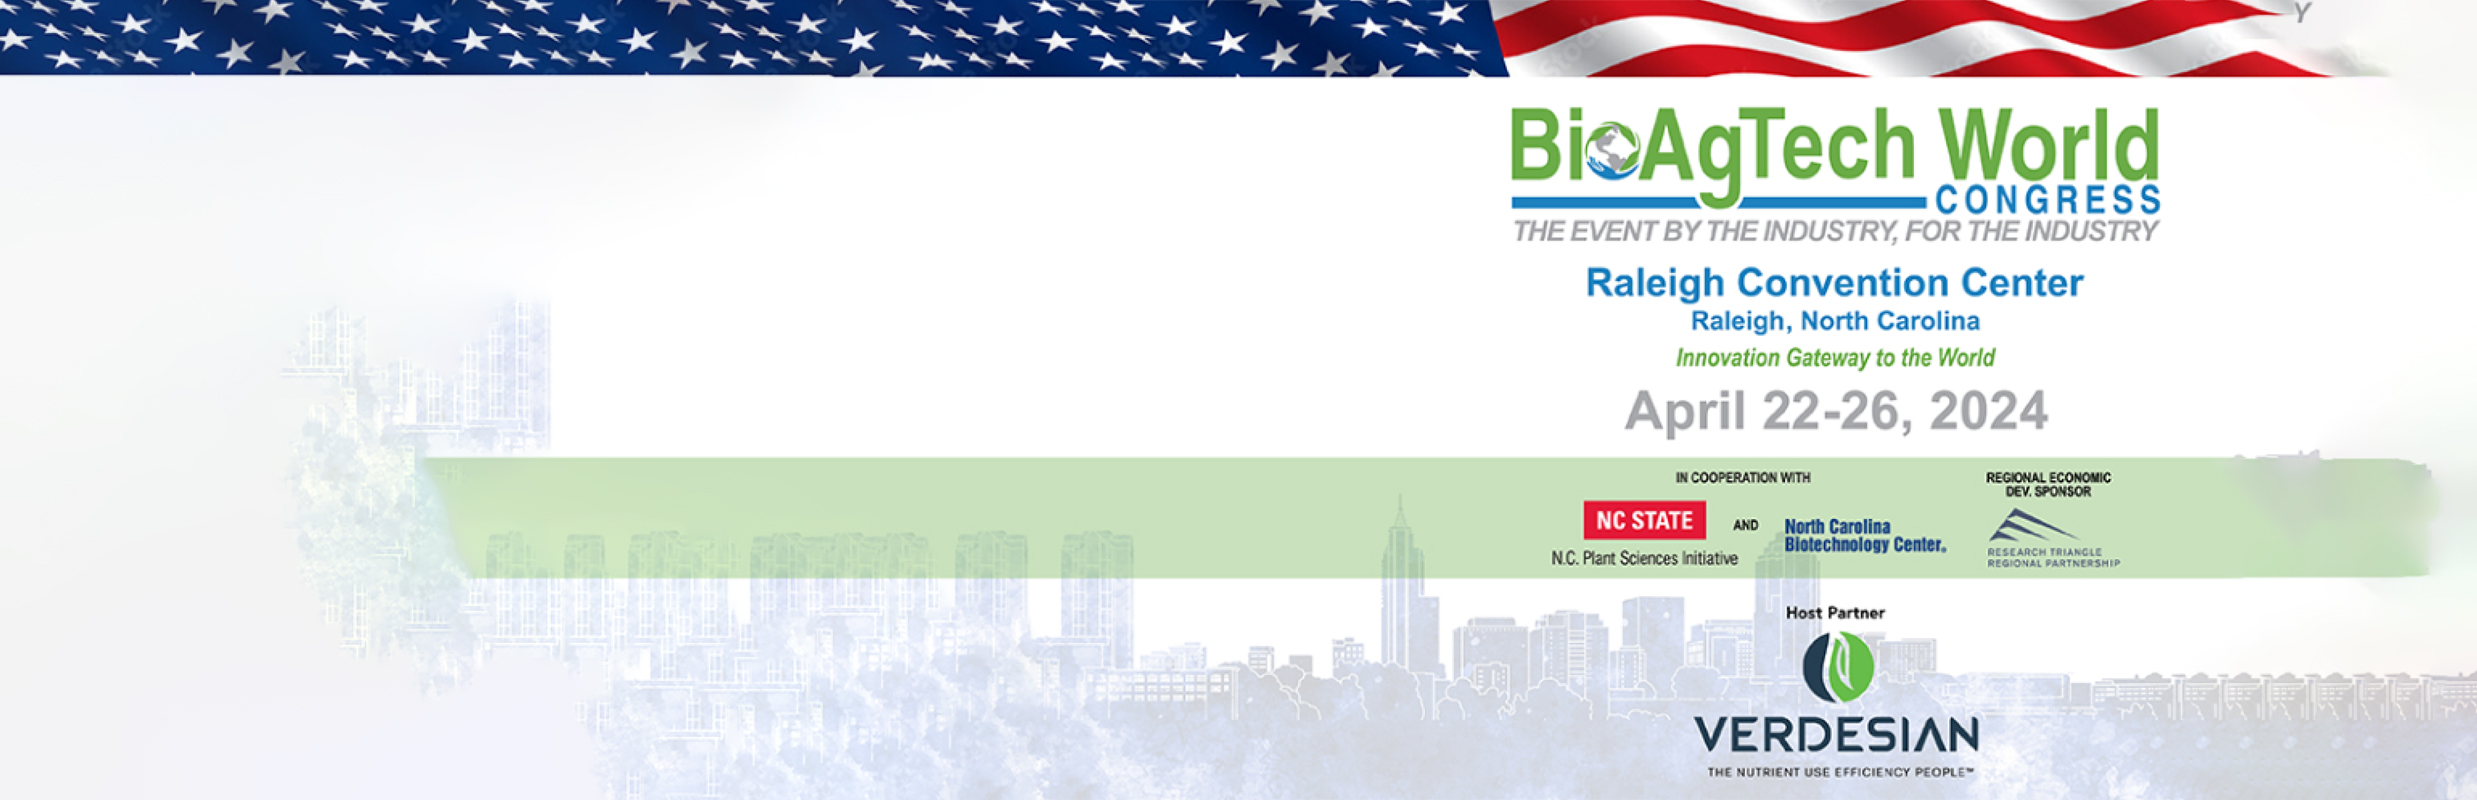 BioAgTech World (BAW) Congress 2024 Overview